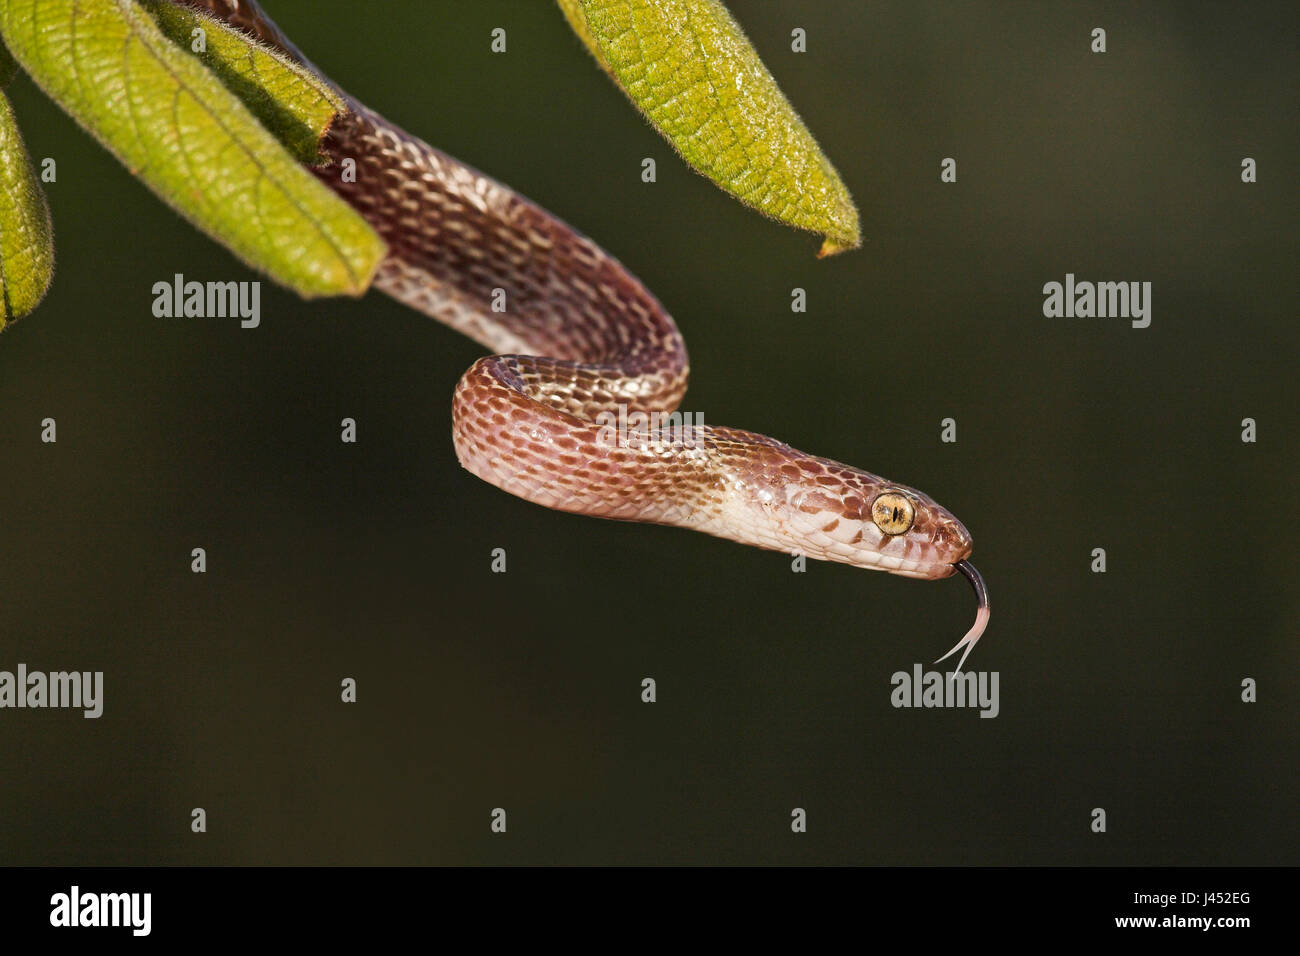 Photo d'un serpent marbré dans un arbre avec des feuilles vertes Banque D'Images